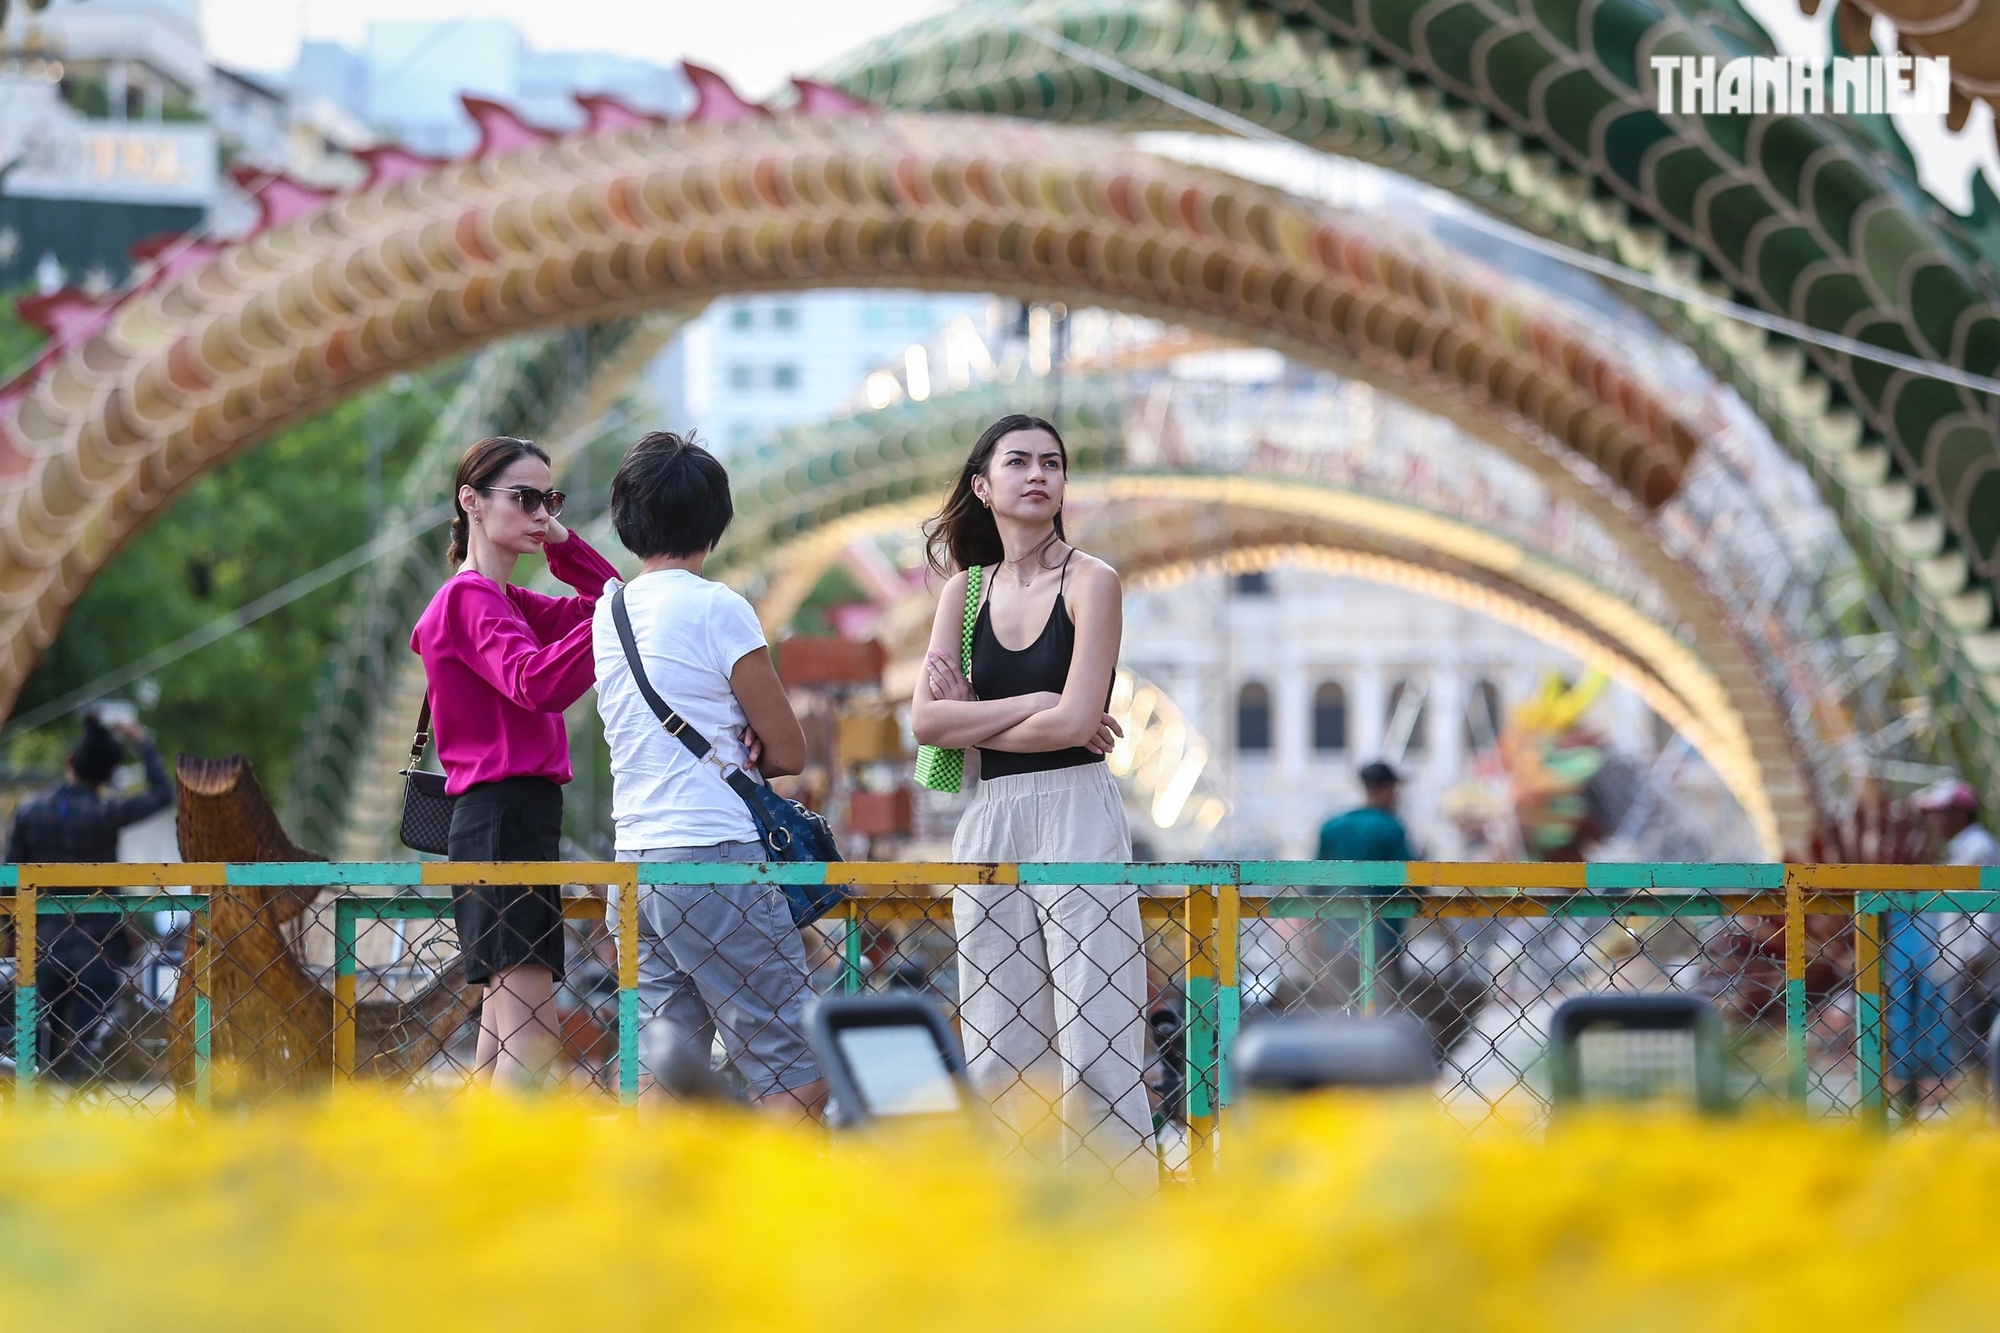 Đường hoa Nguyễn Huệ Tết Giáp Thìn phục vụ nhu cầu du xuân, thưởng ngoạn của người dân thành phố và du khách từ 19 giờ ngày 7.2 đến 21 giờ ngày 14.2